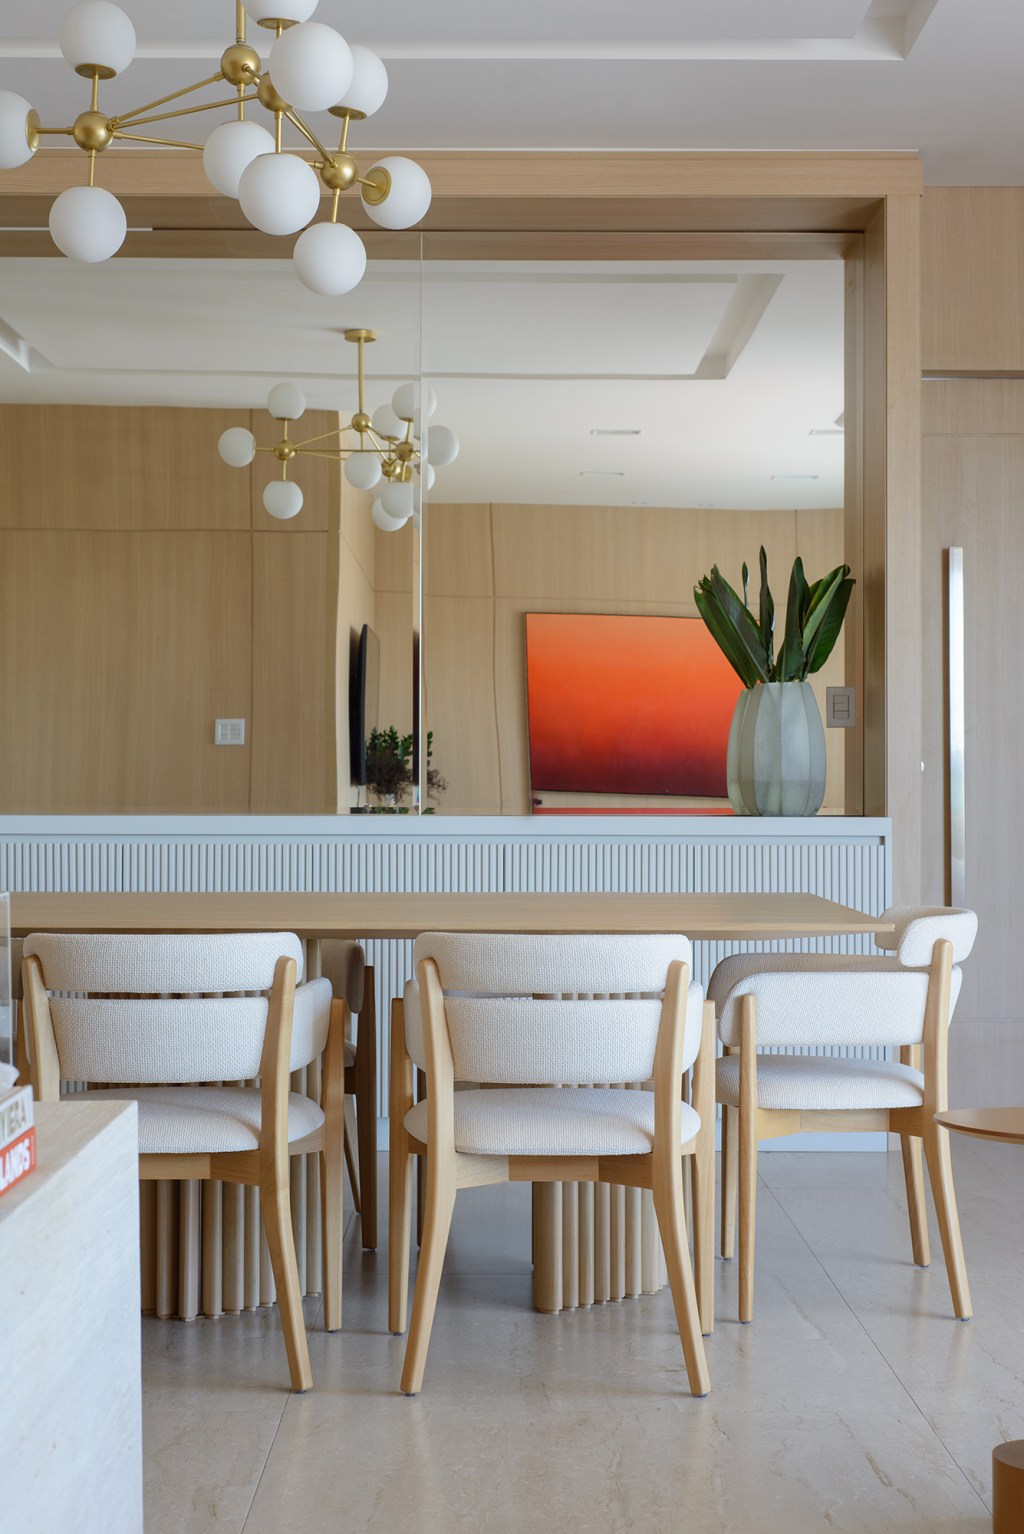 Móveis contemporâneos e paredes amadeiradas marcam este apê de 138 m². Projeto de Leticia Nanetti. Na foto, sala de jantar com espelho e aparador ripado.